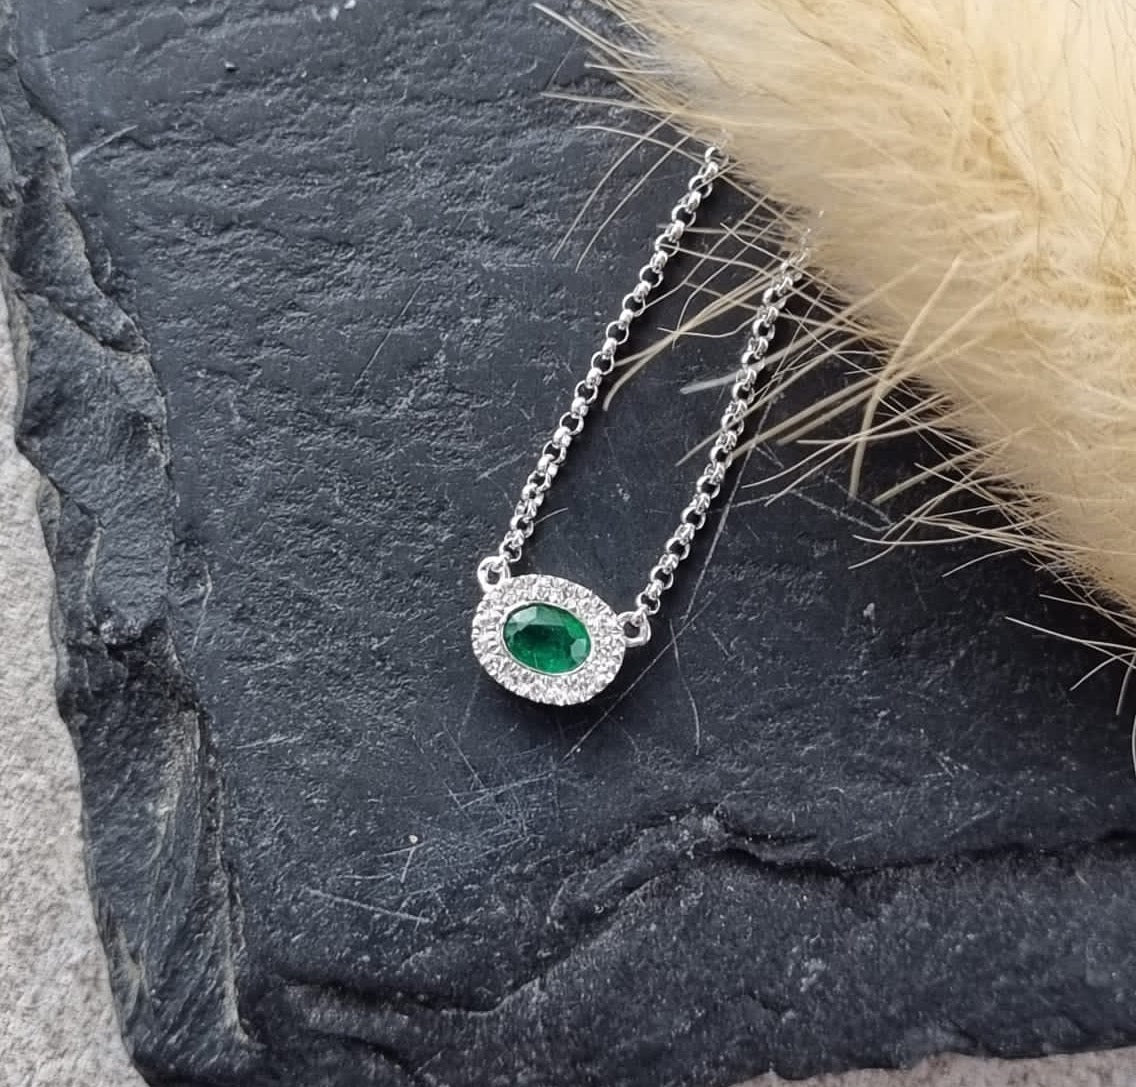 Oval emerald halo petite pendant